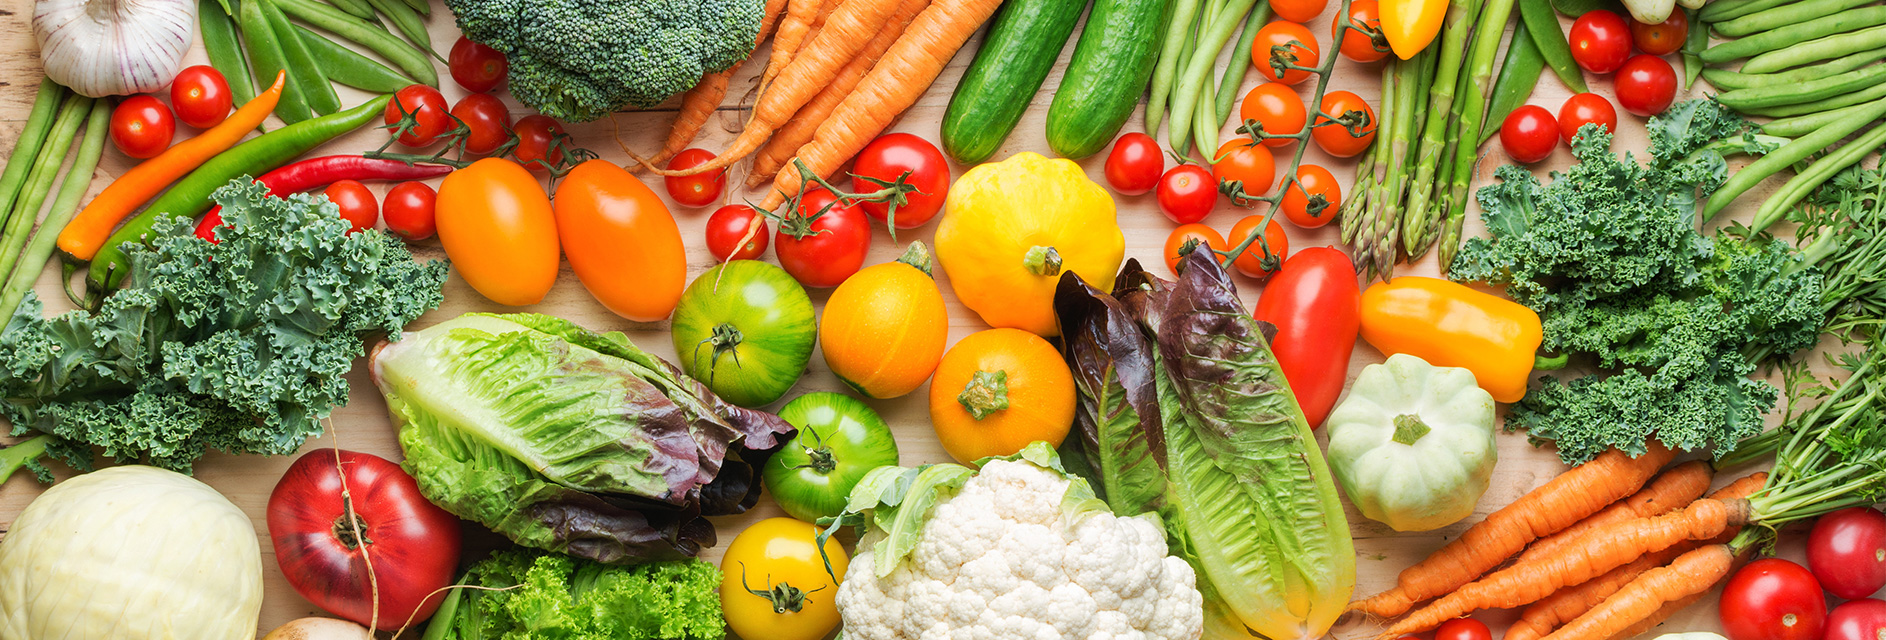 Zöldség és gyümölcs fogyasztás